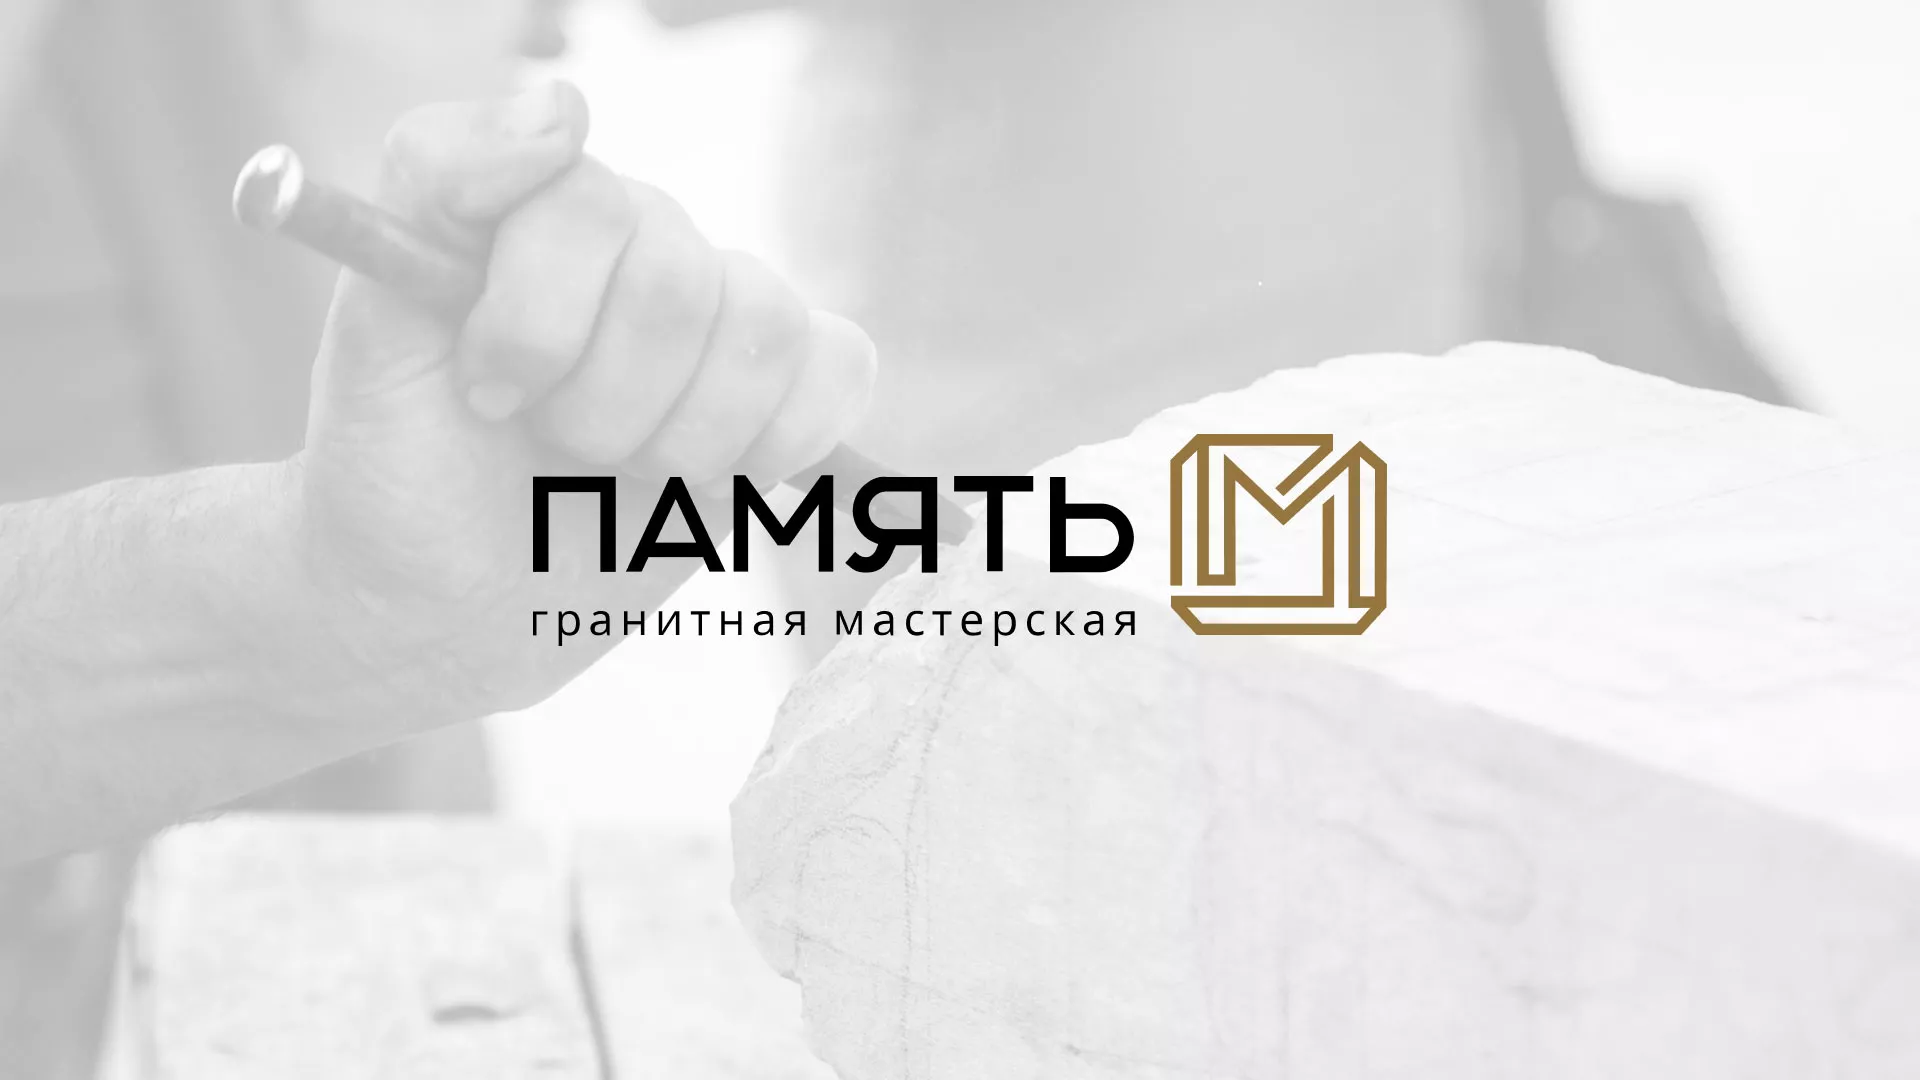 Разработка логотипа и сайта компании «Память-М» в Ломоносове